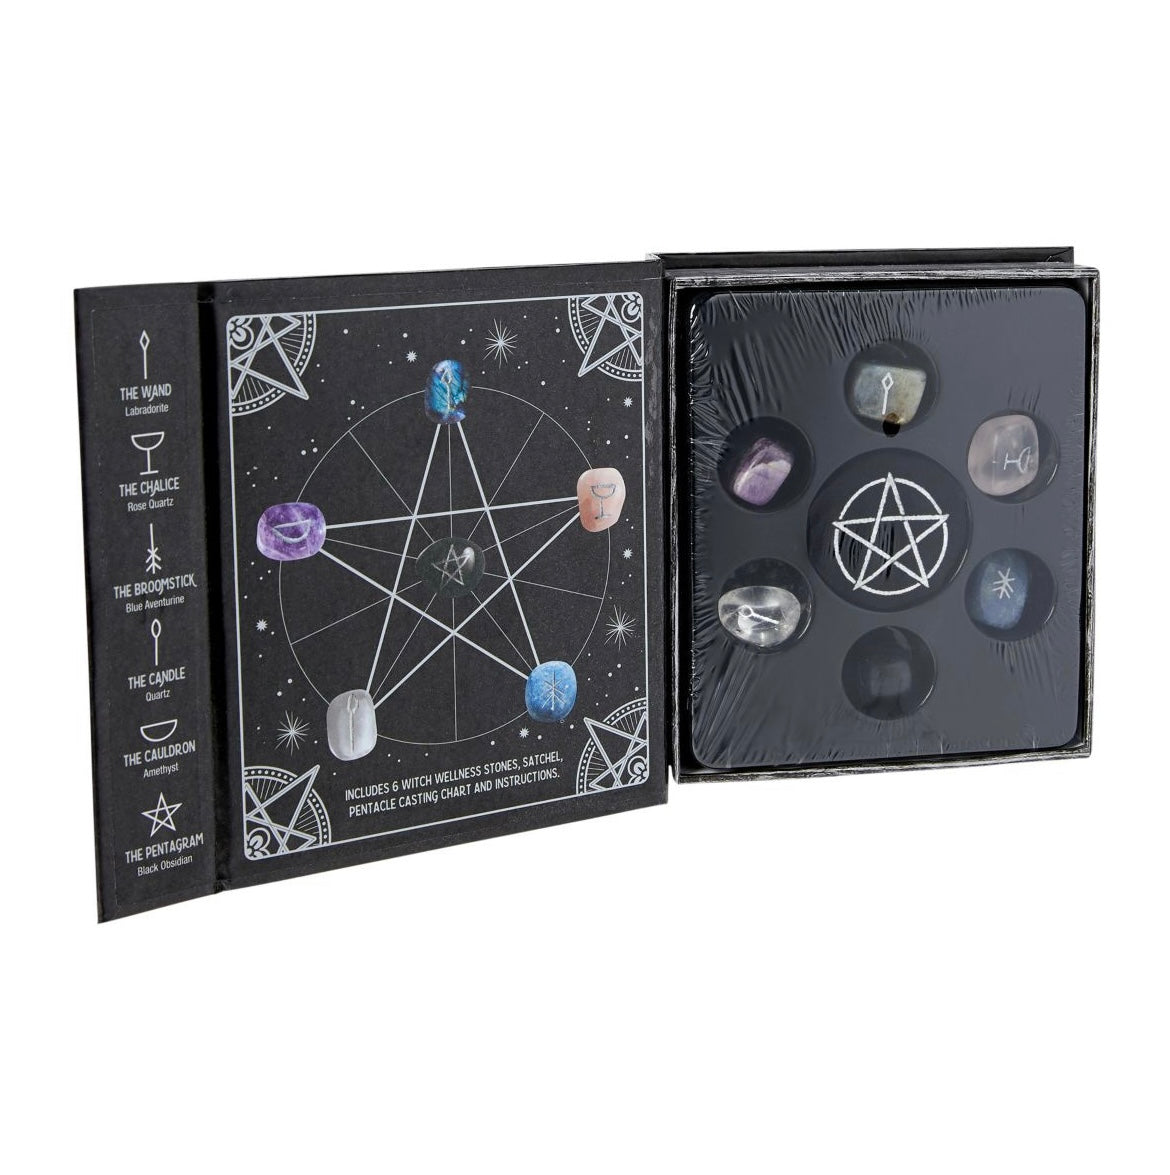 Witch Wellness Stone Kit